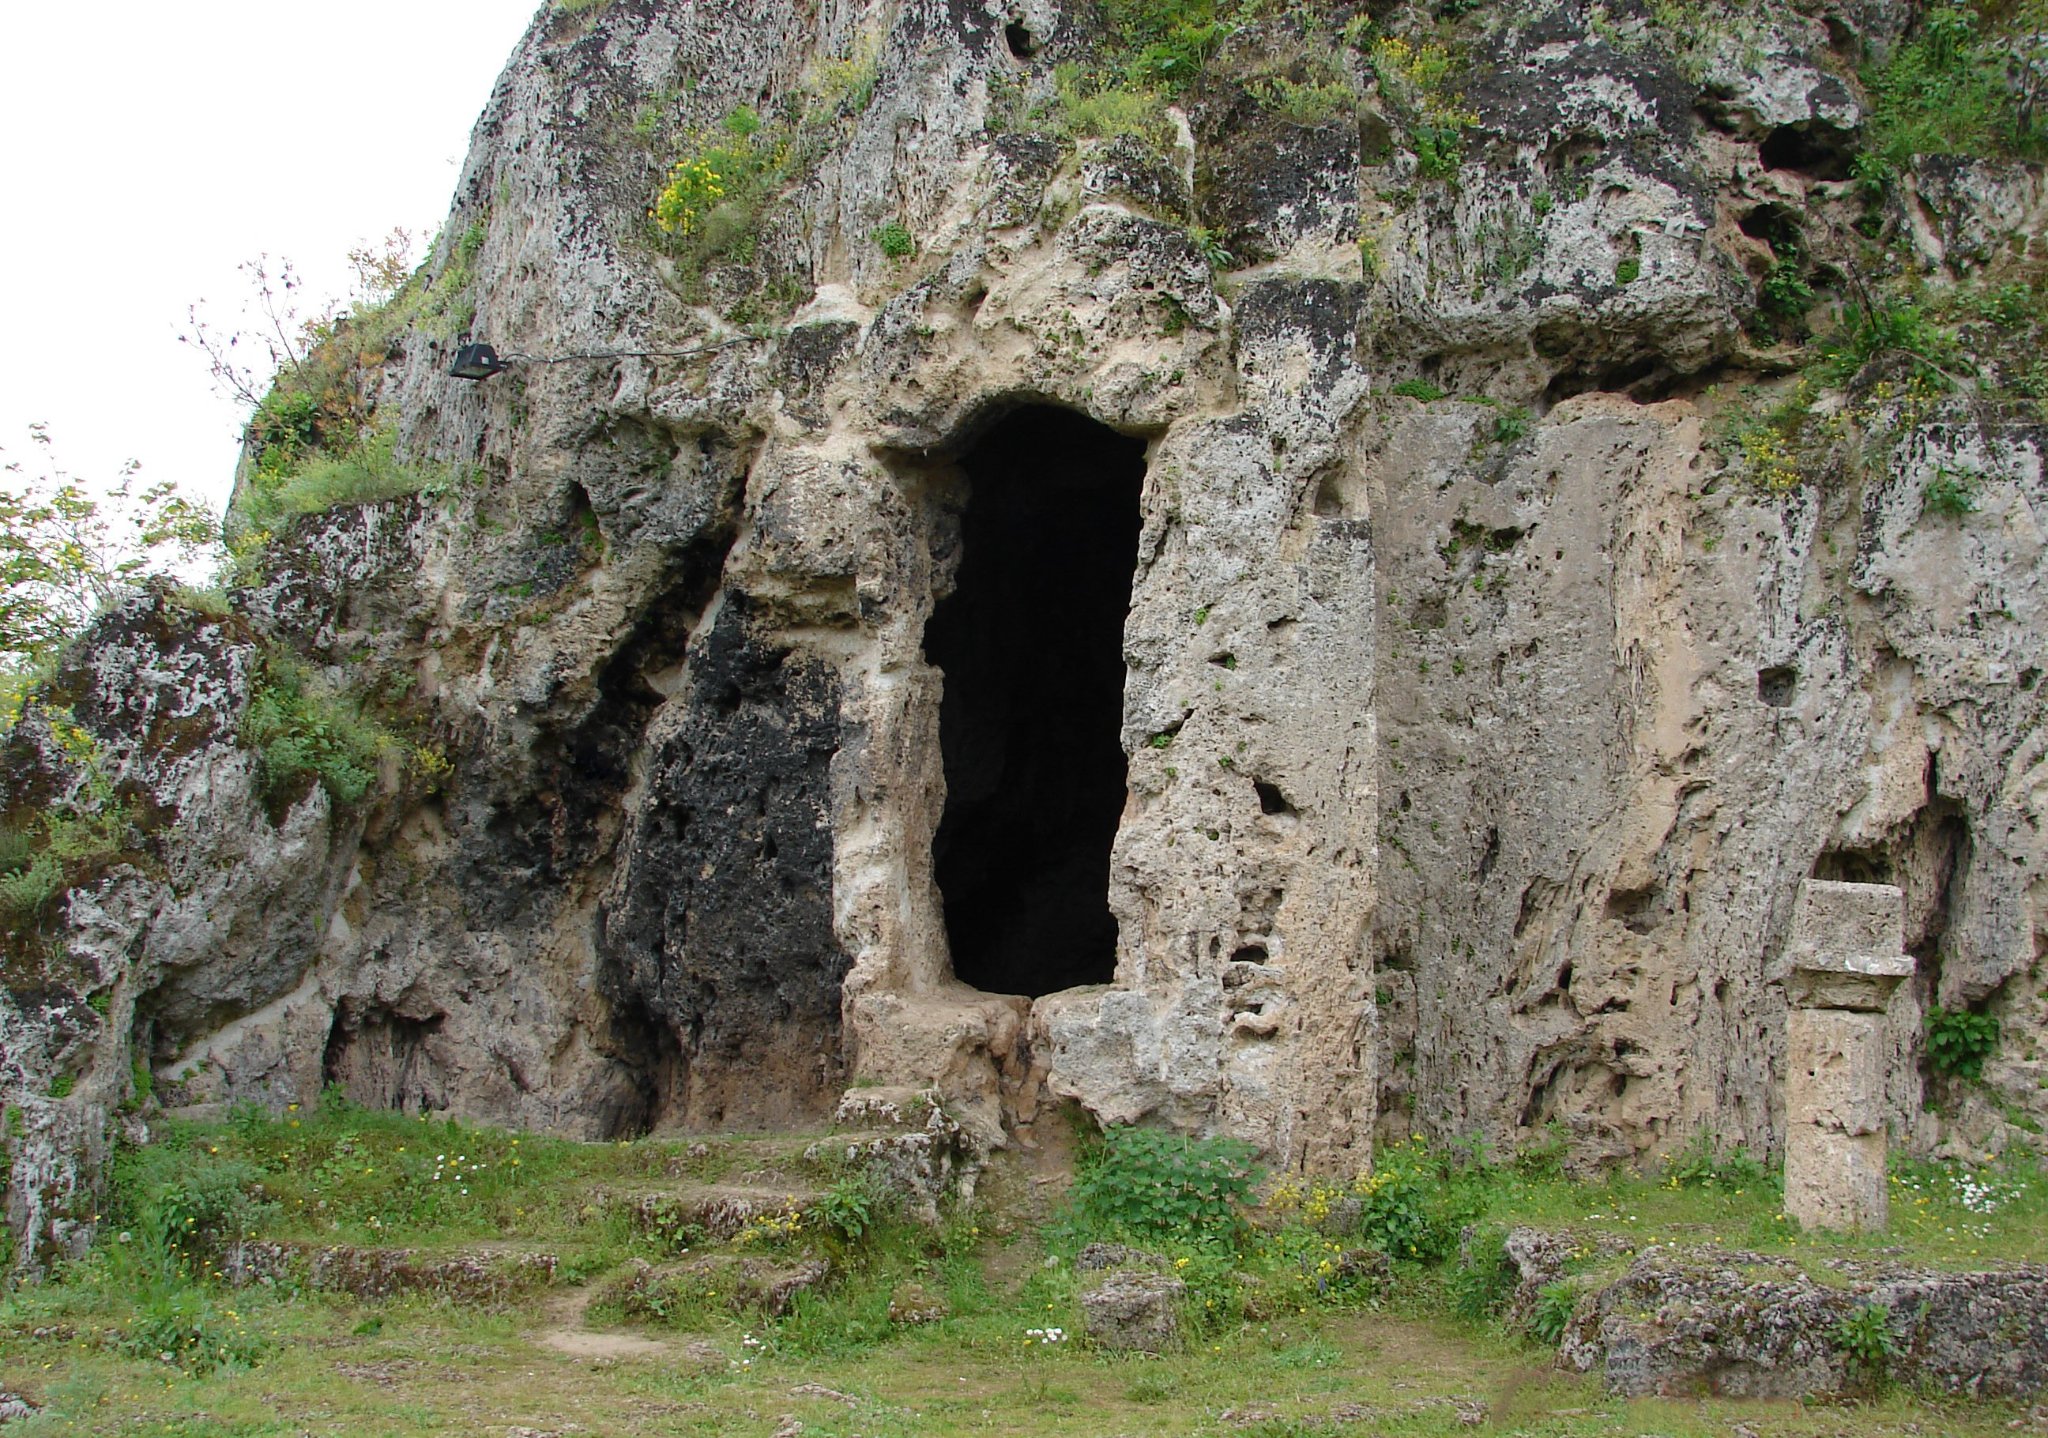 Το αρχαίο λατομείο στα Ισβόρια και η πρώτη σπηλιά του Νυμφαίου με την διαμορφωμένη είσοδο